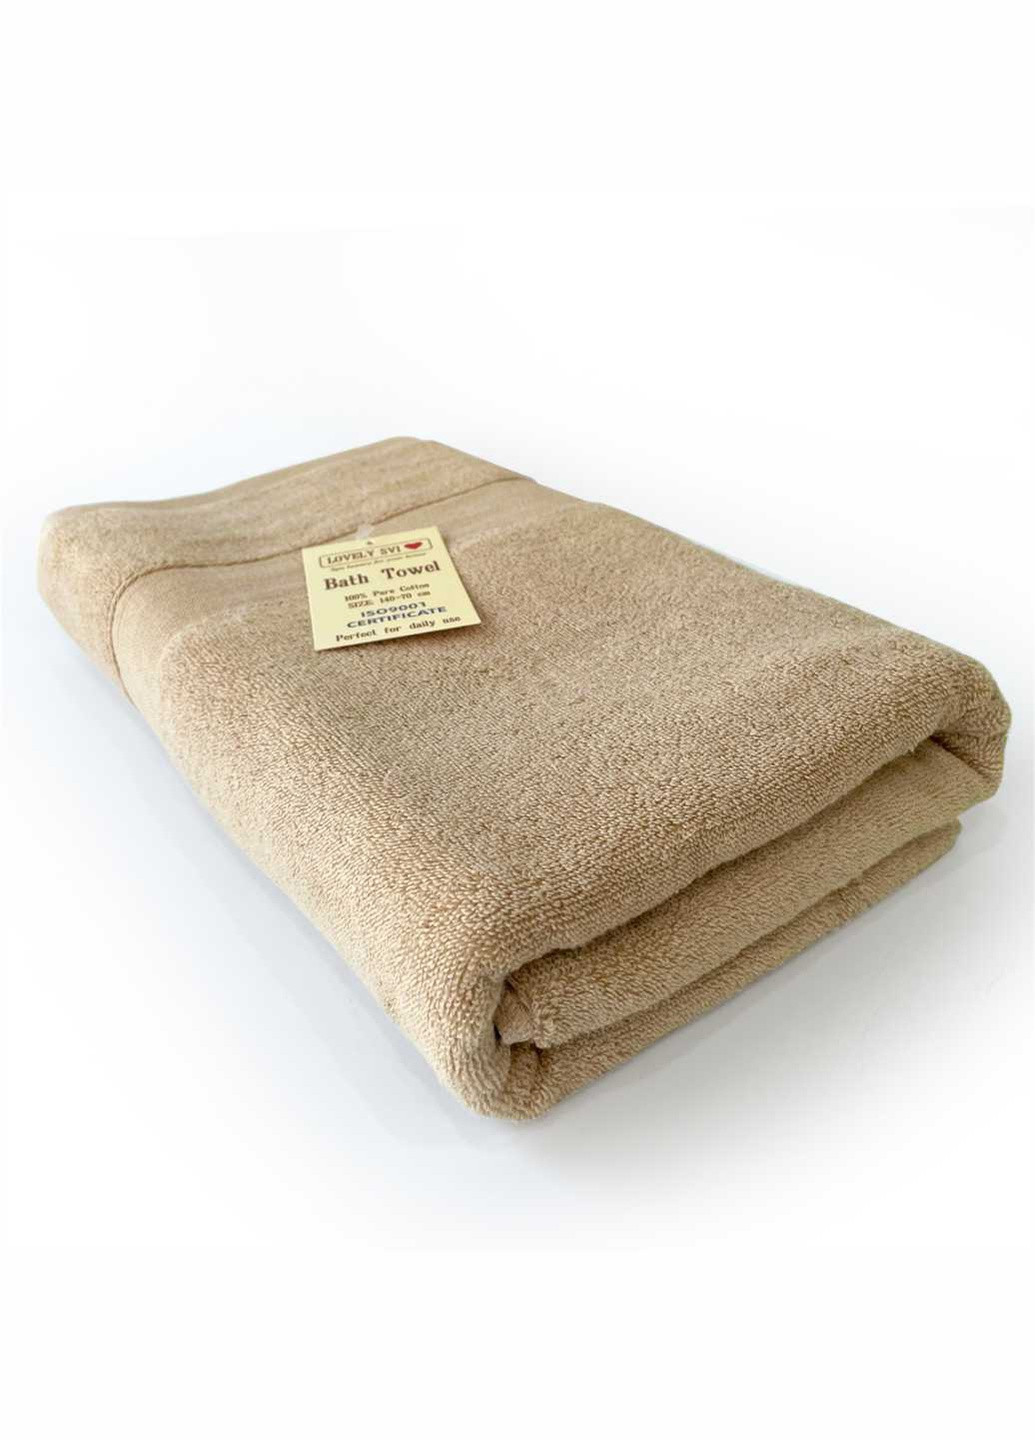 Lovely Svi полотенце махровое банное (хлопок) в подарочном пакете размер: 70 на 140 см капучино однотонный кофейный производство - Китай